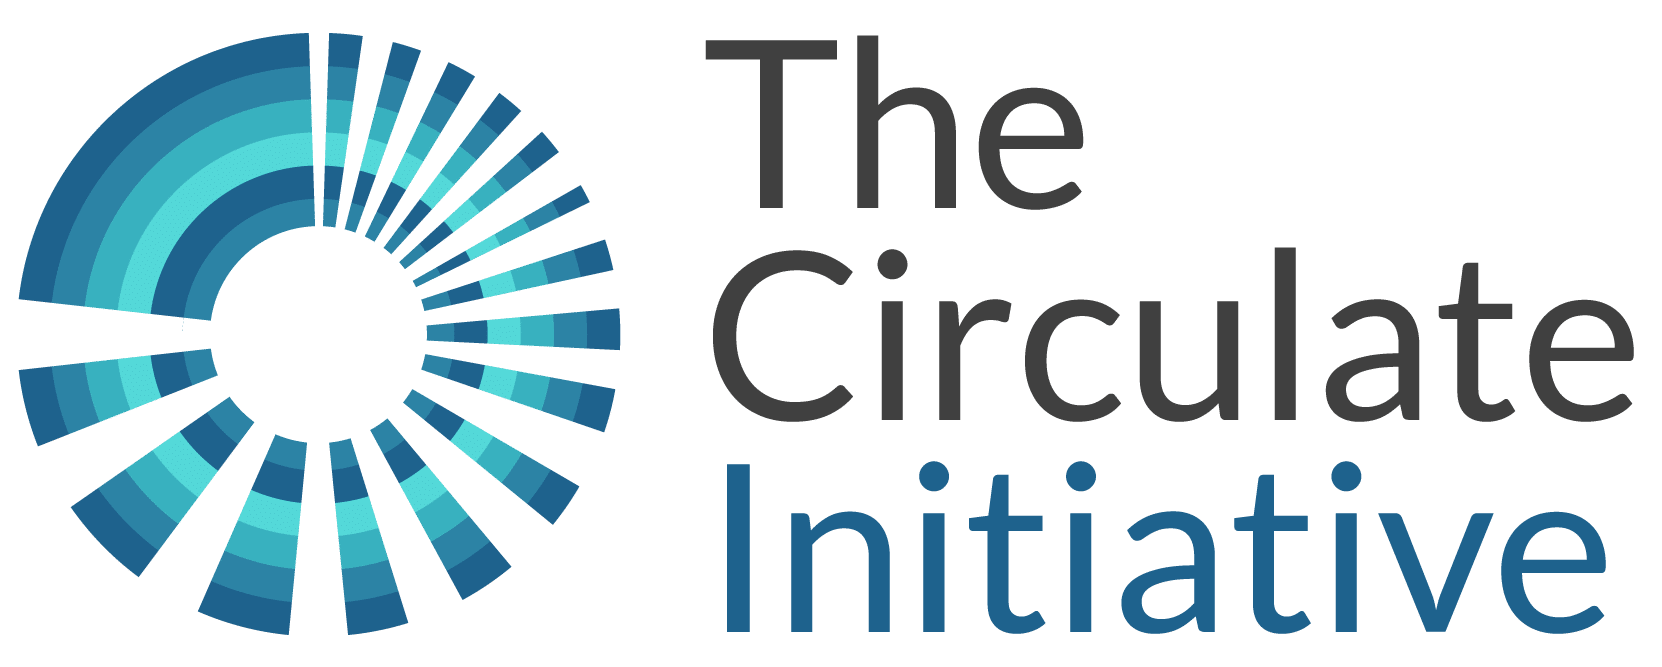 The Circulate Initiative logo